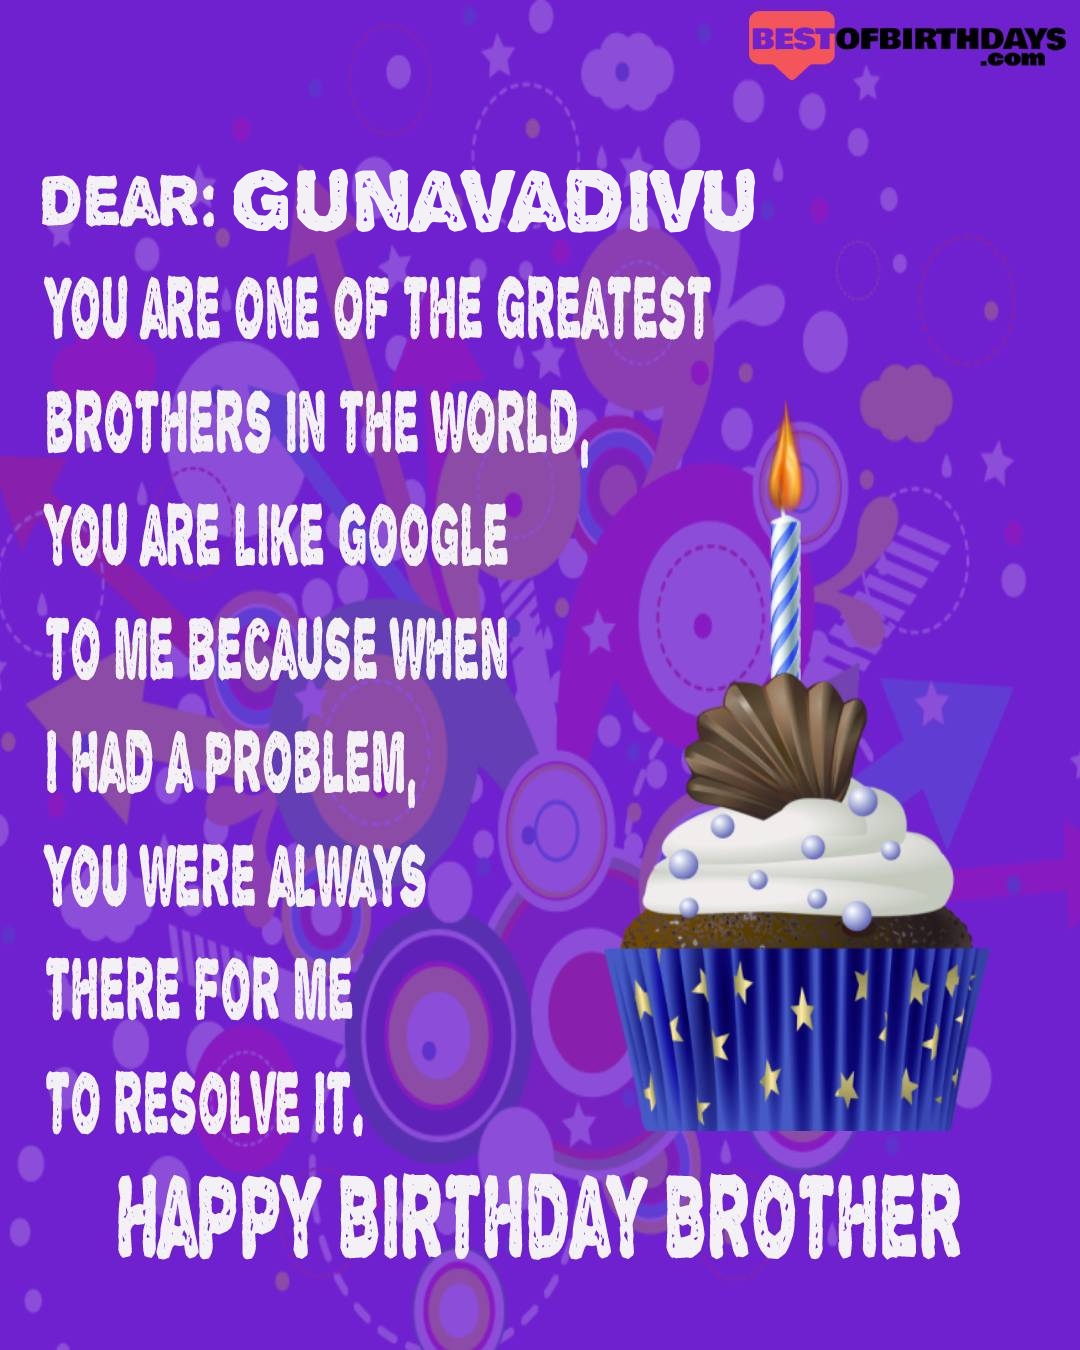 Happy birthday gunavadivu bhai brother bro